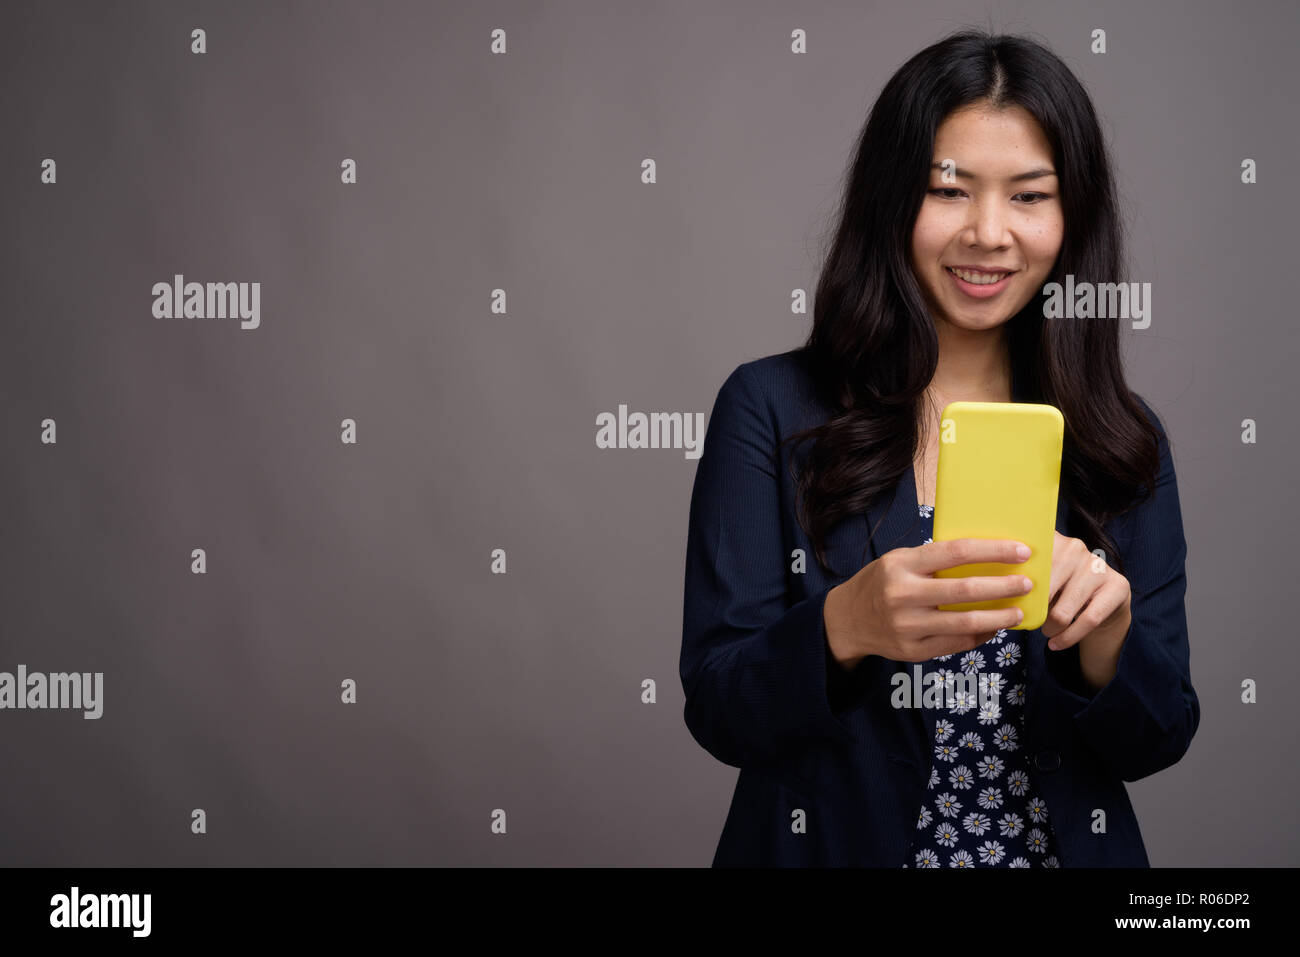 Asiatische Frau mit Handy vor grauem Hintergrund Stockfoto